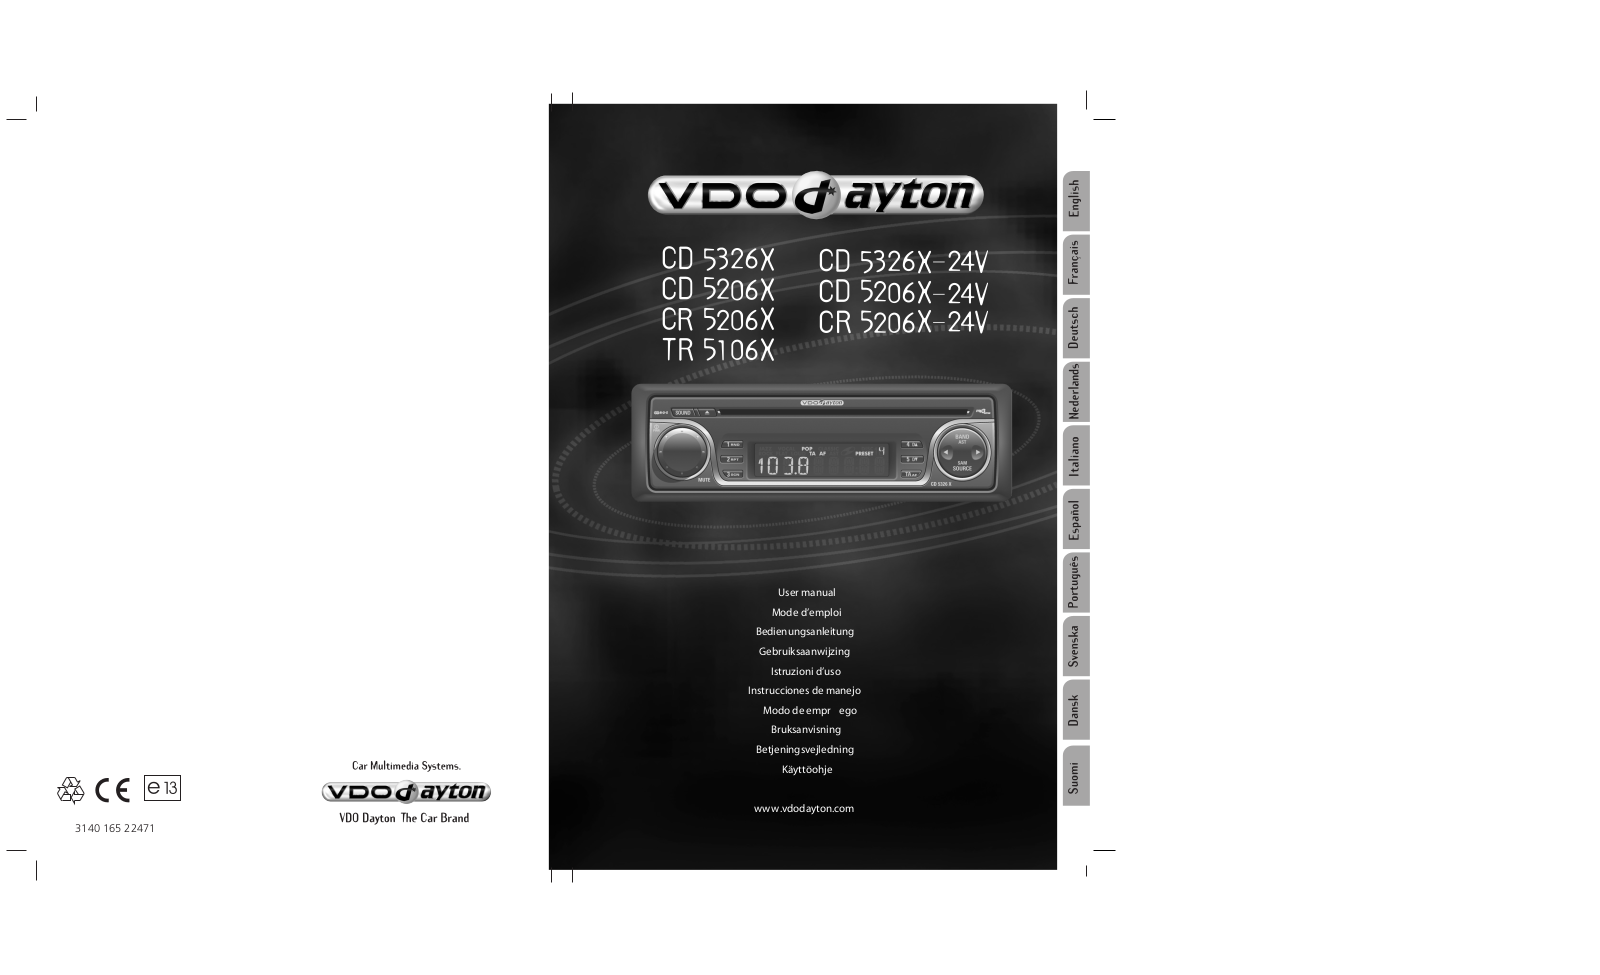 Vdo dayton CR 5206 X - 24V, TR 5106 X, CD 5206 X - 24, CD 5326 X - 24V, CD 5206 X Manual